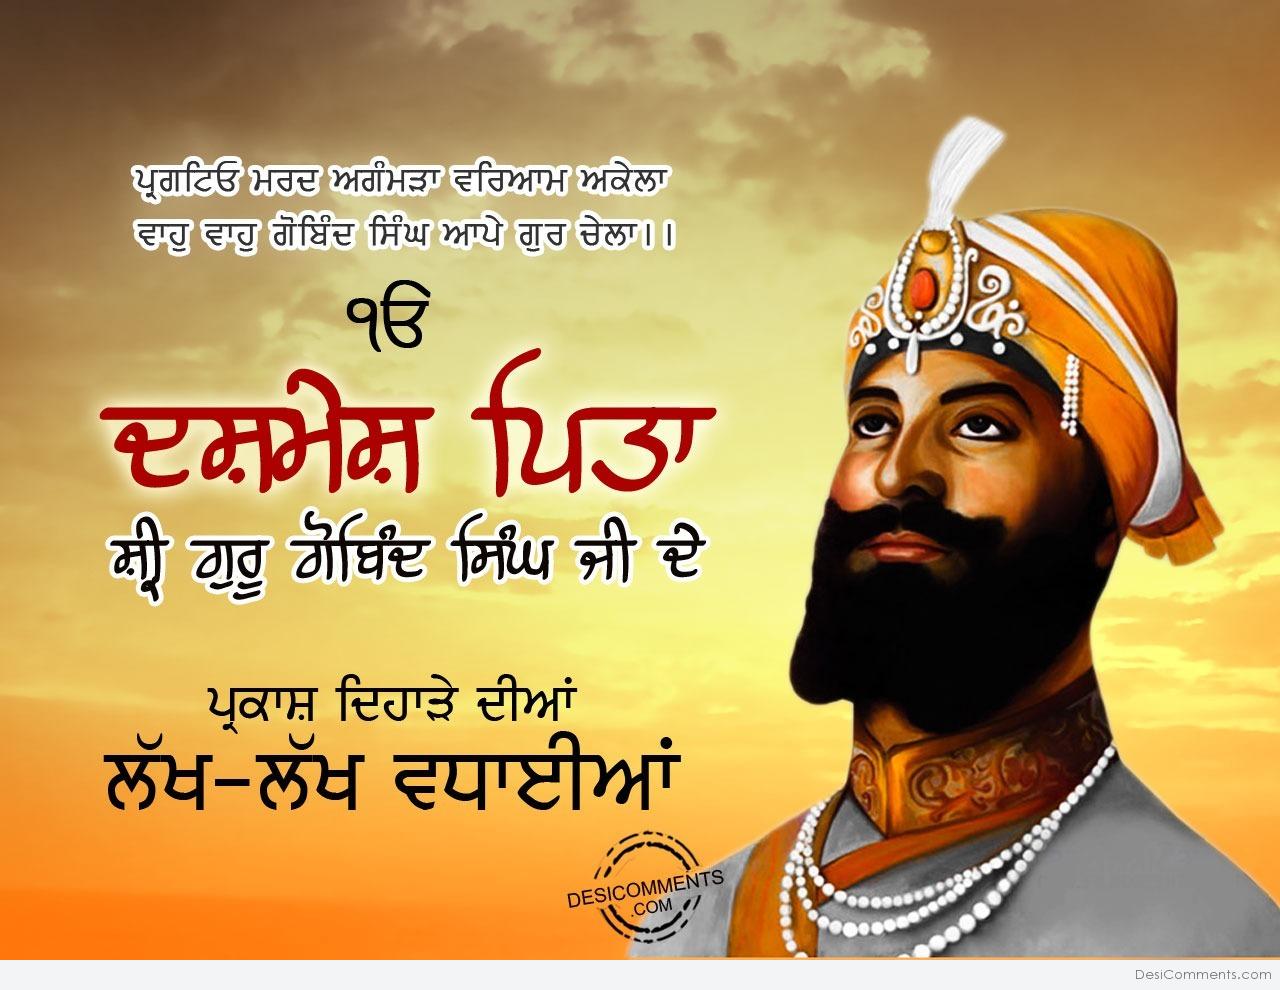 Guru Gobind Singh Ji Gurpurab Pictures, Images, Graphics for Facebook